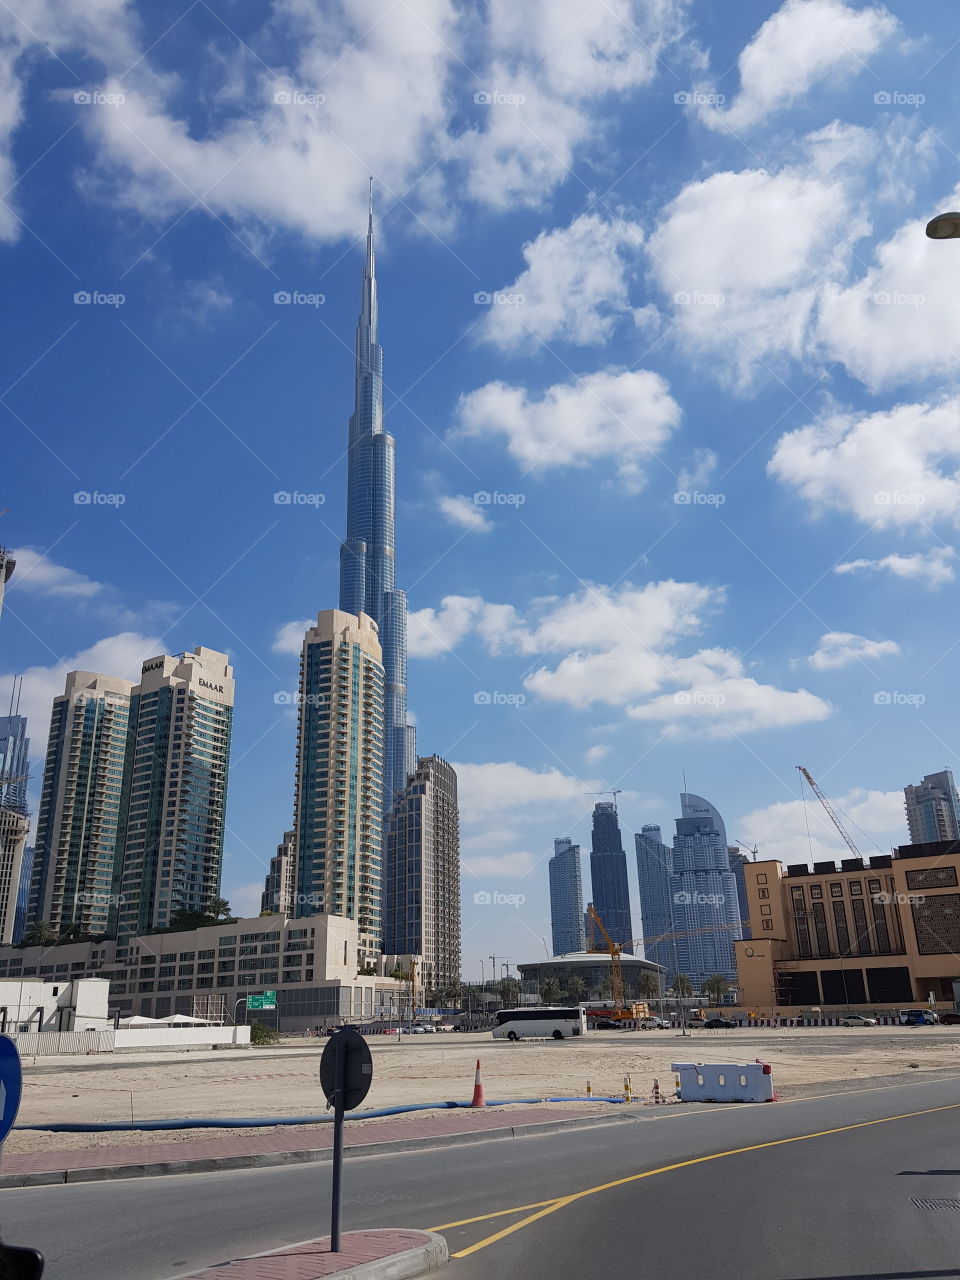 A bright day in Dubai